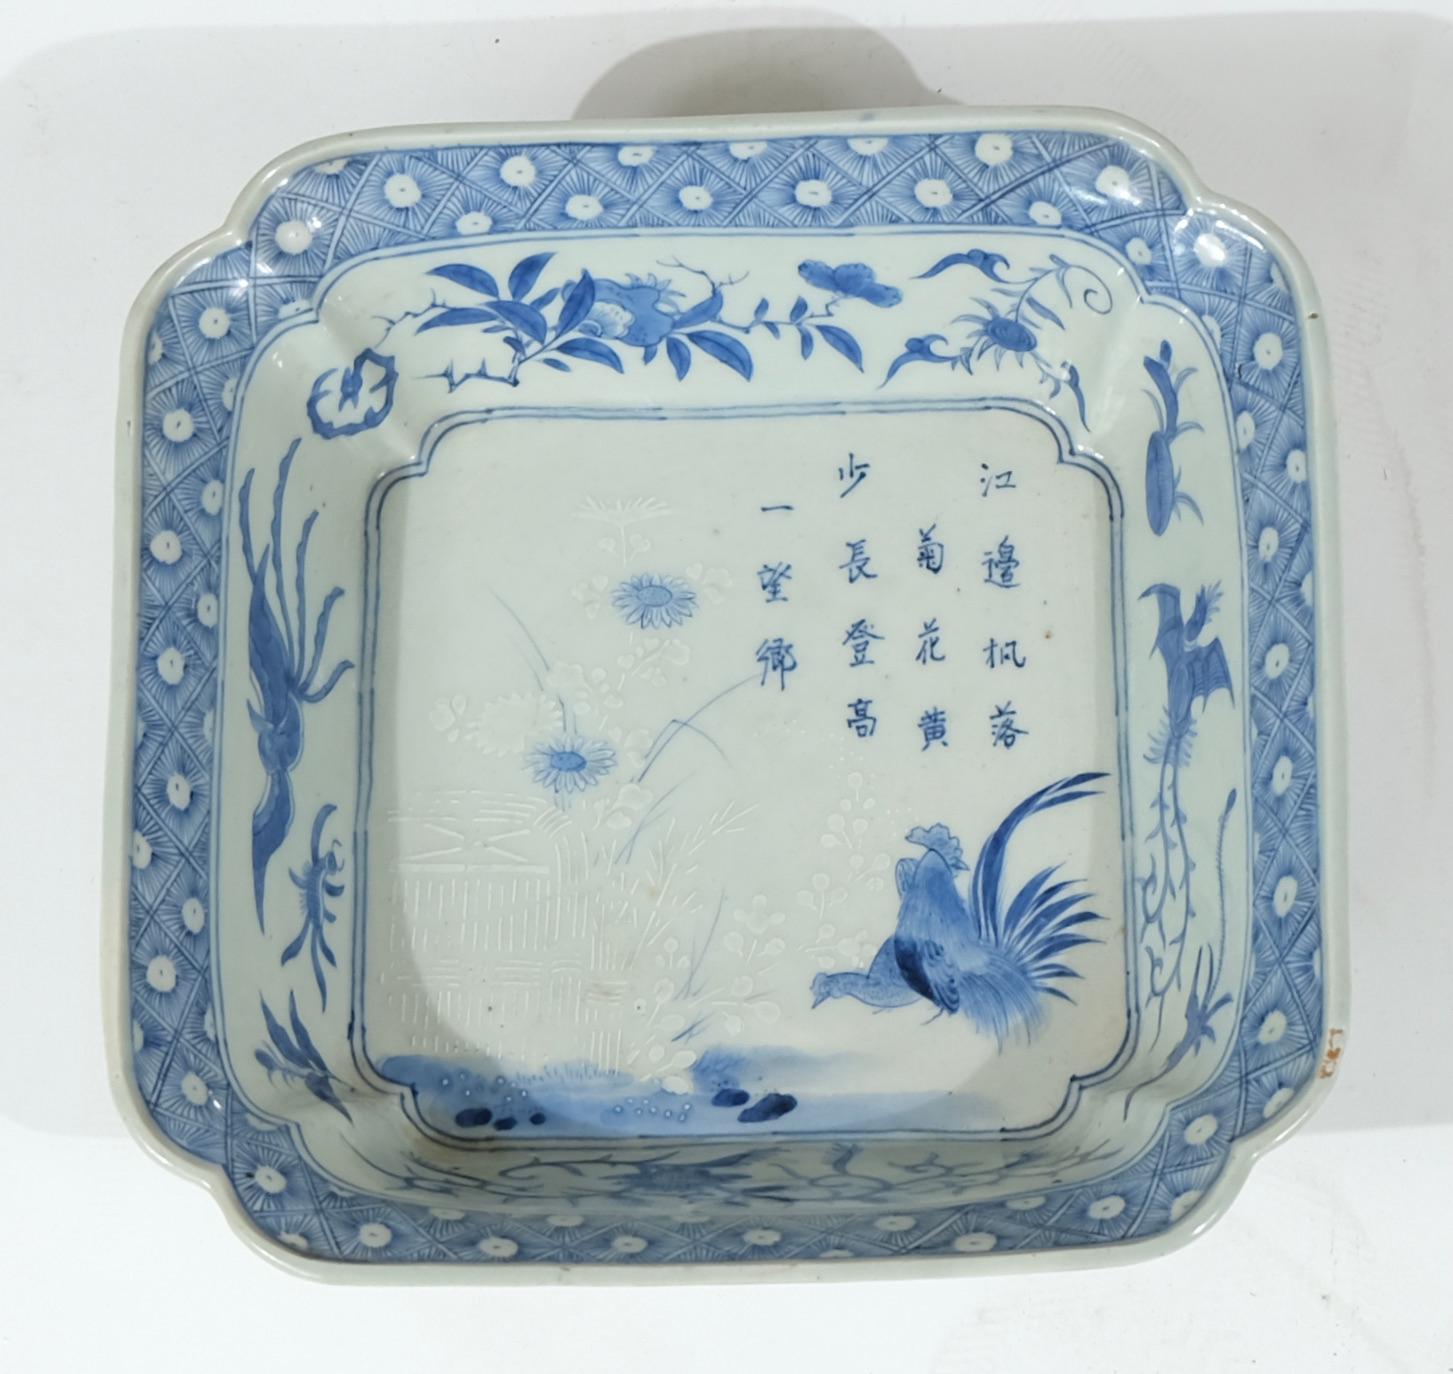 Eine rechteckige Schale aus japanischem Porzellan mit blau-weißem Dekor. Motive eines Gedichtes und eines Hahns und einer Henne.
Ein sehr schönes Stück japanisches Porzellan. Sowohl das Motiv als auch der Zustand sind großartig.